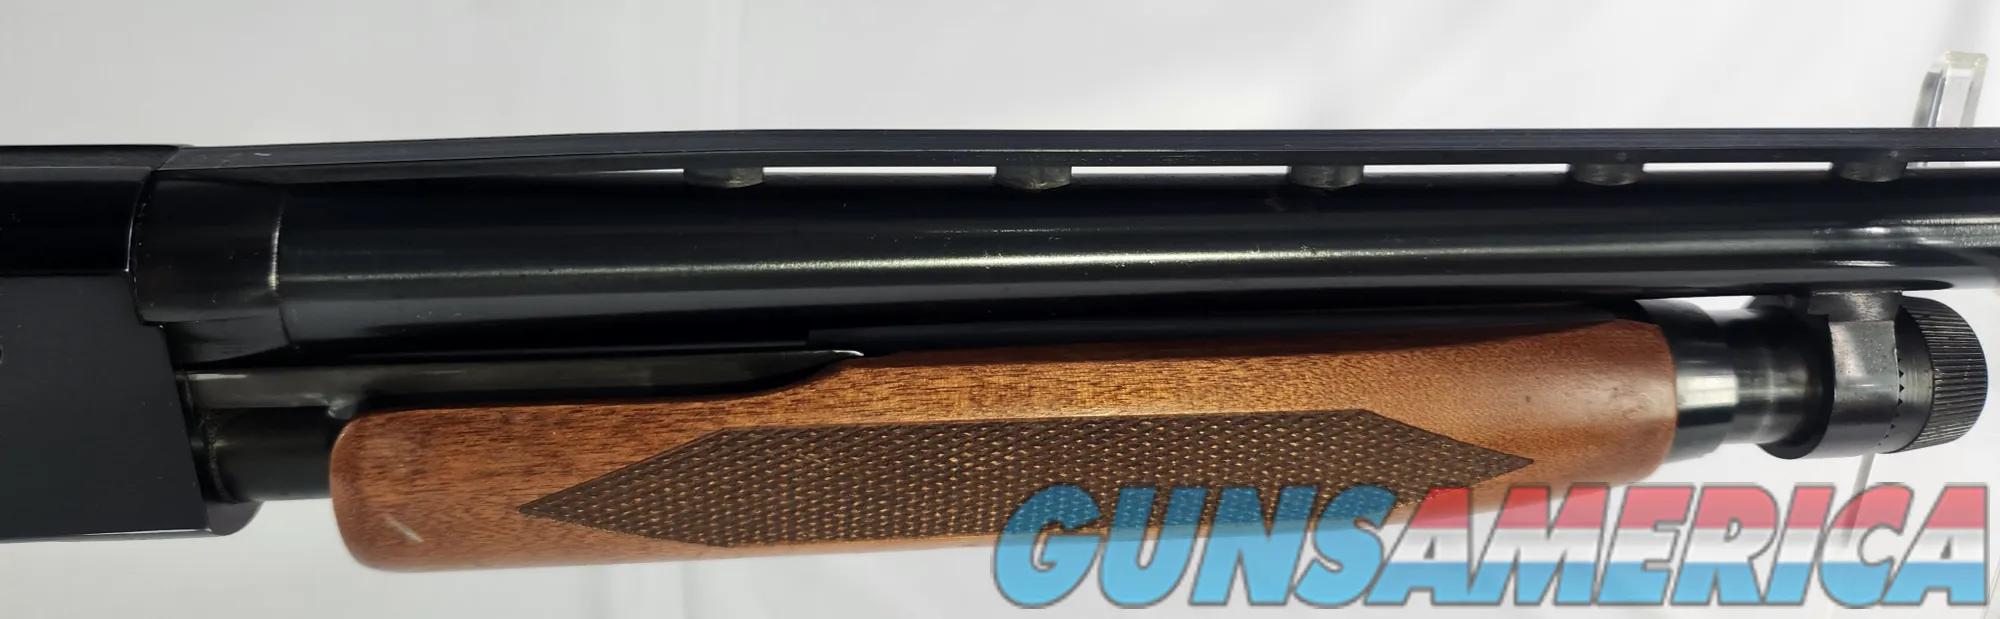 Winchester 1300 12 Gauge Shotgun